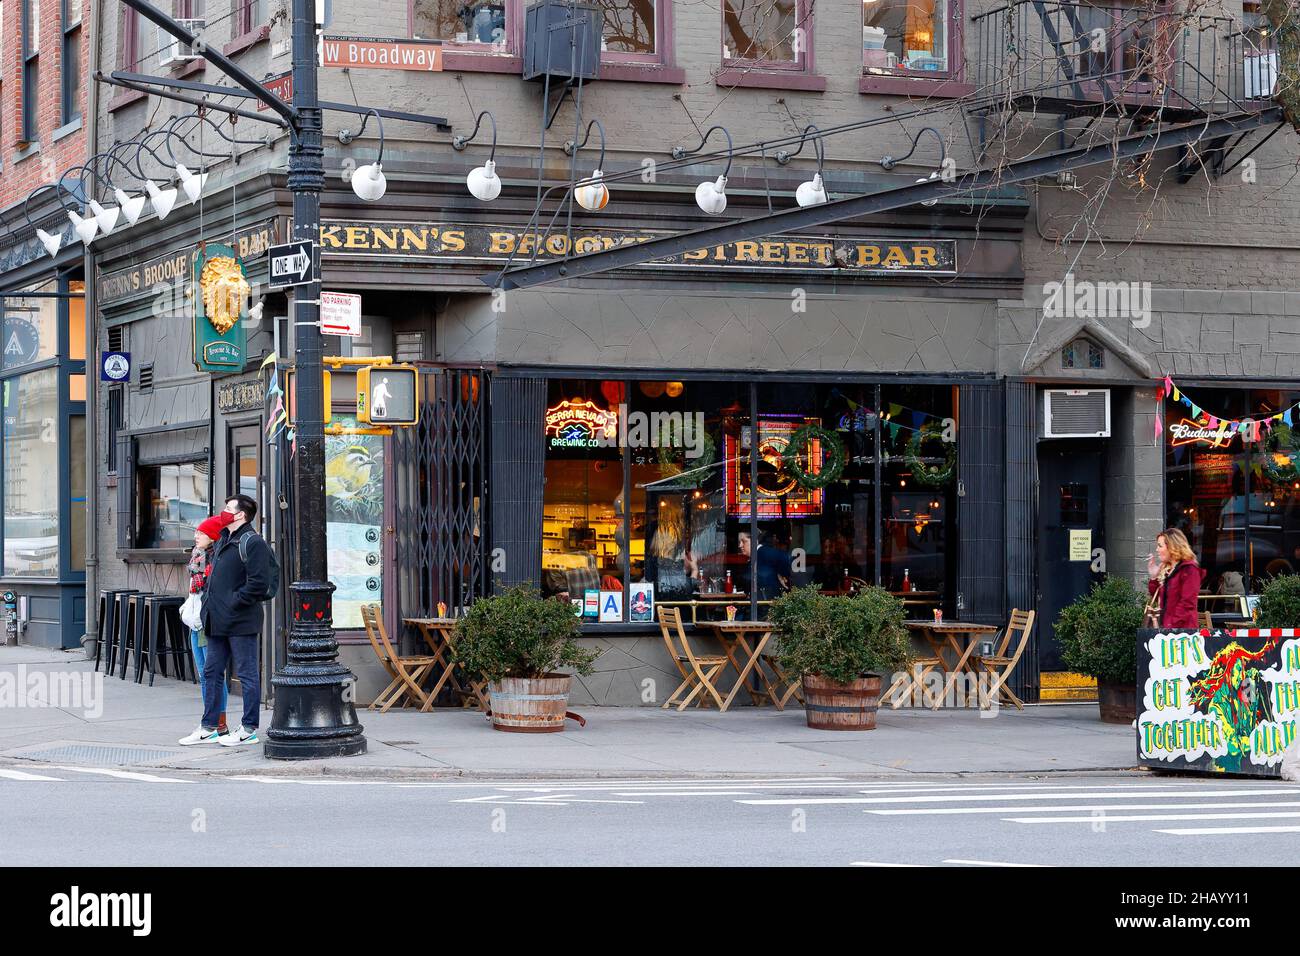 Kenn's Broome Street Bar, 363 W Broadway, New York, NYC Foto von einer Bar und einem Restaurant im Stadtteil SoHo in Manhattan. Stockfoto